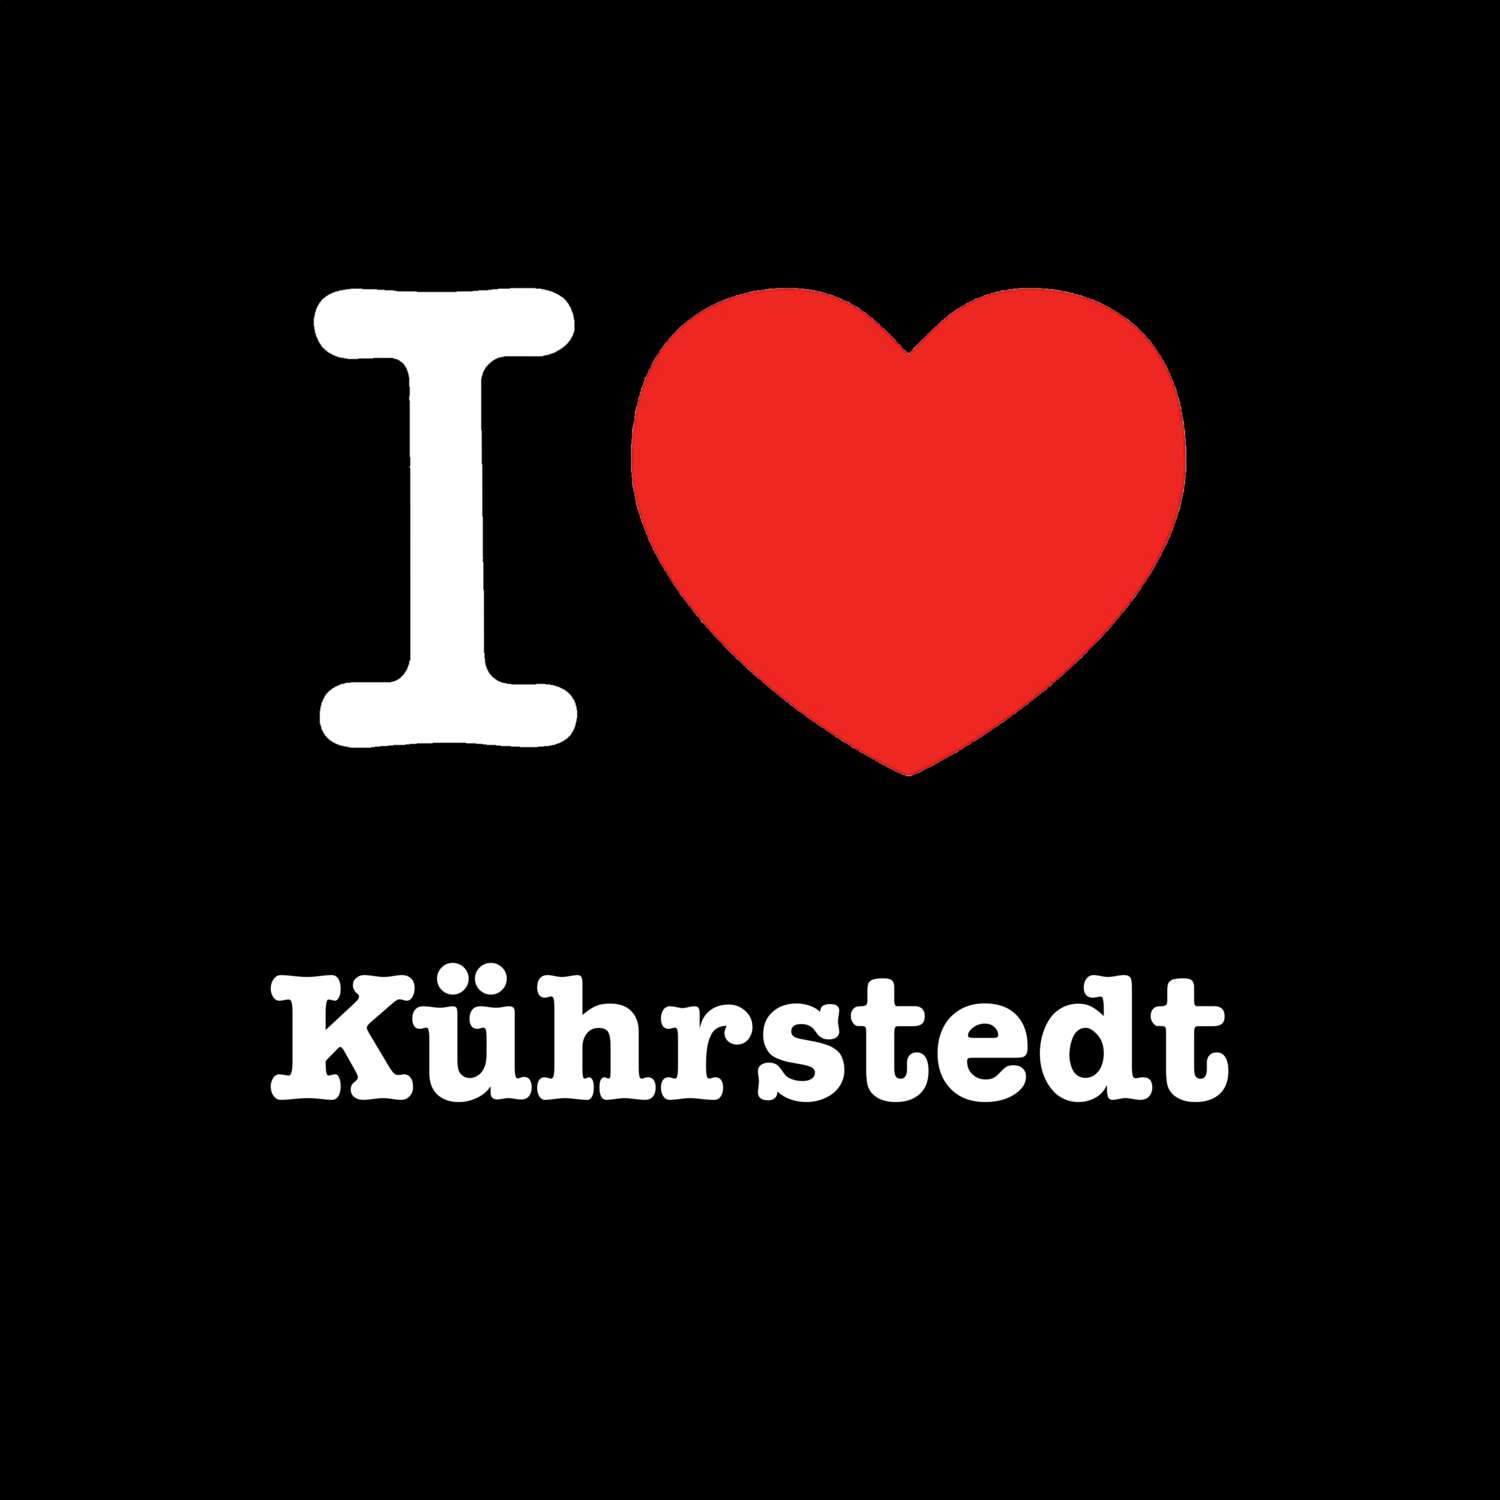 Kührstedt T-Shirt »I love«